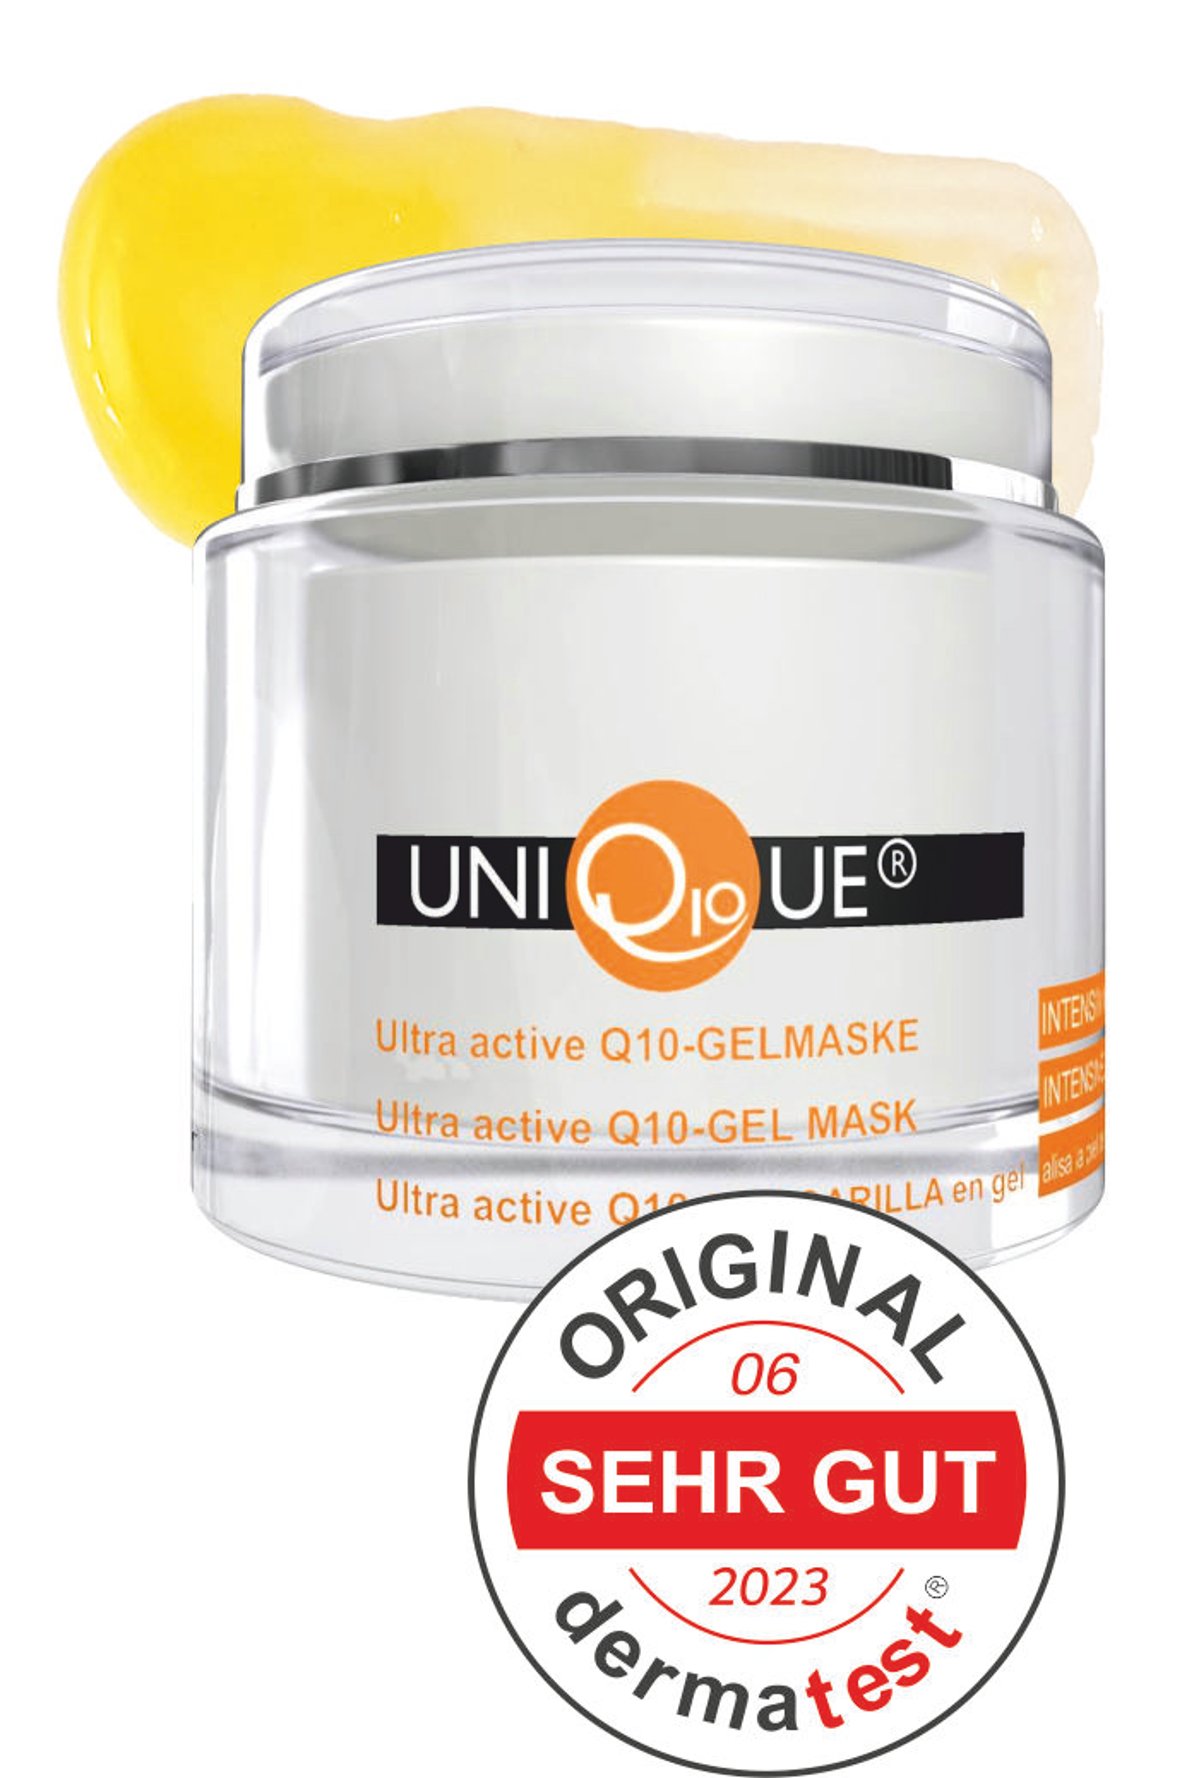 Q10 Gelmaske - Ultra active Gel-Maske 